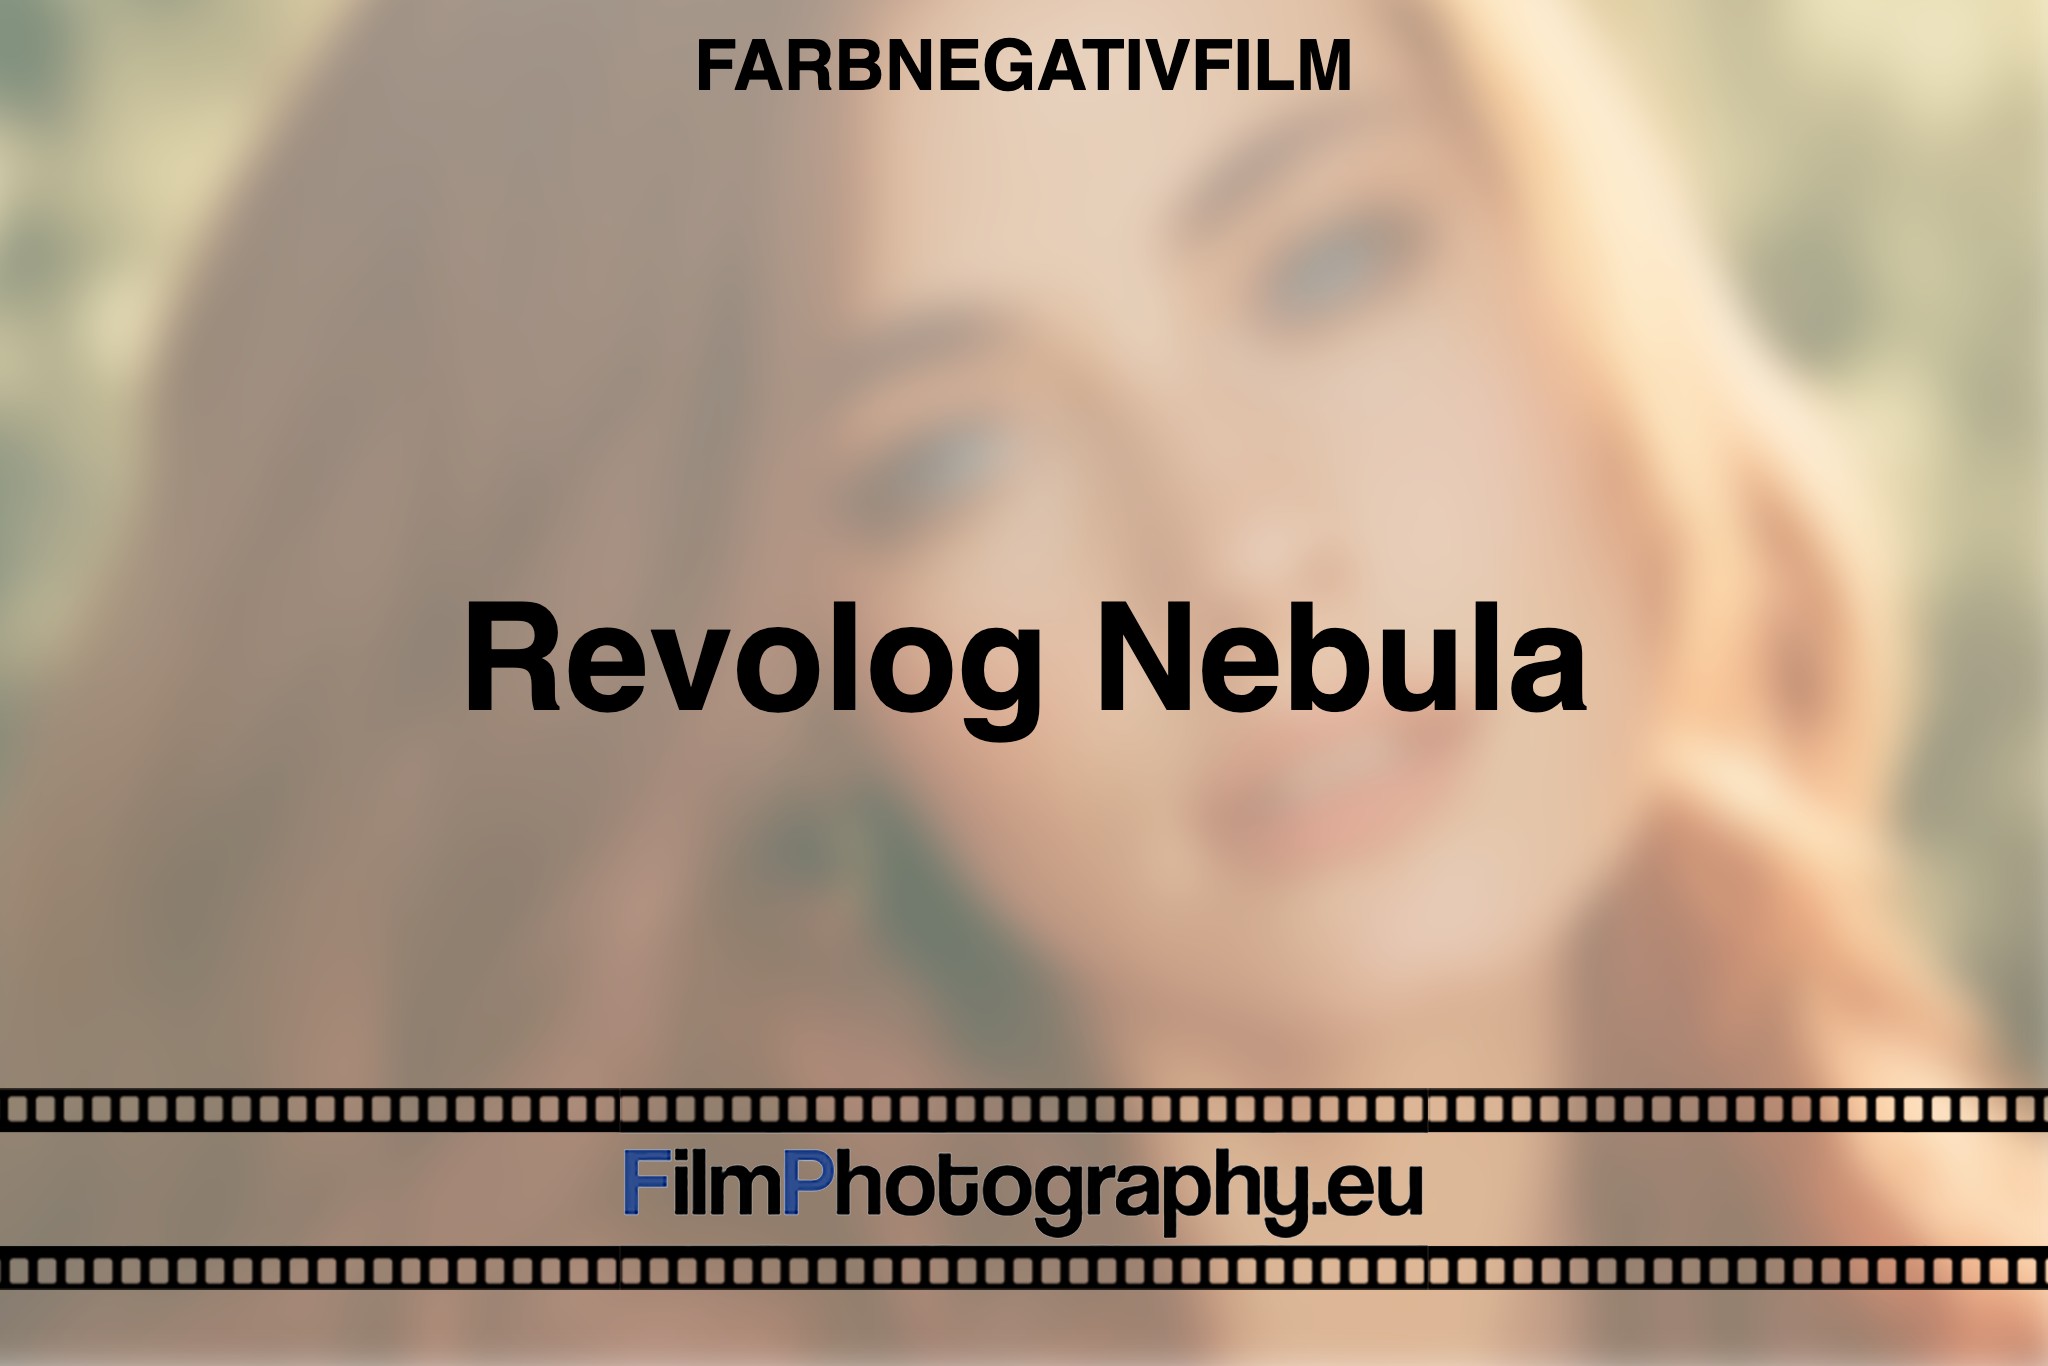 revolog-nebula-farbnegativfilm-bnv